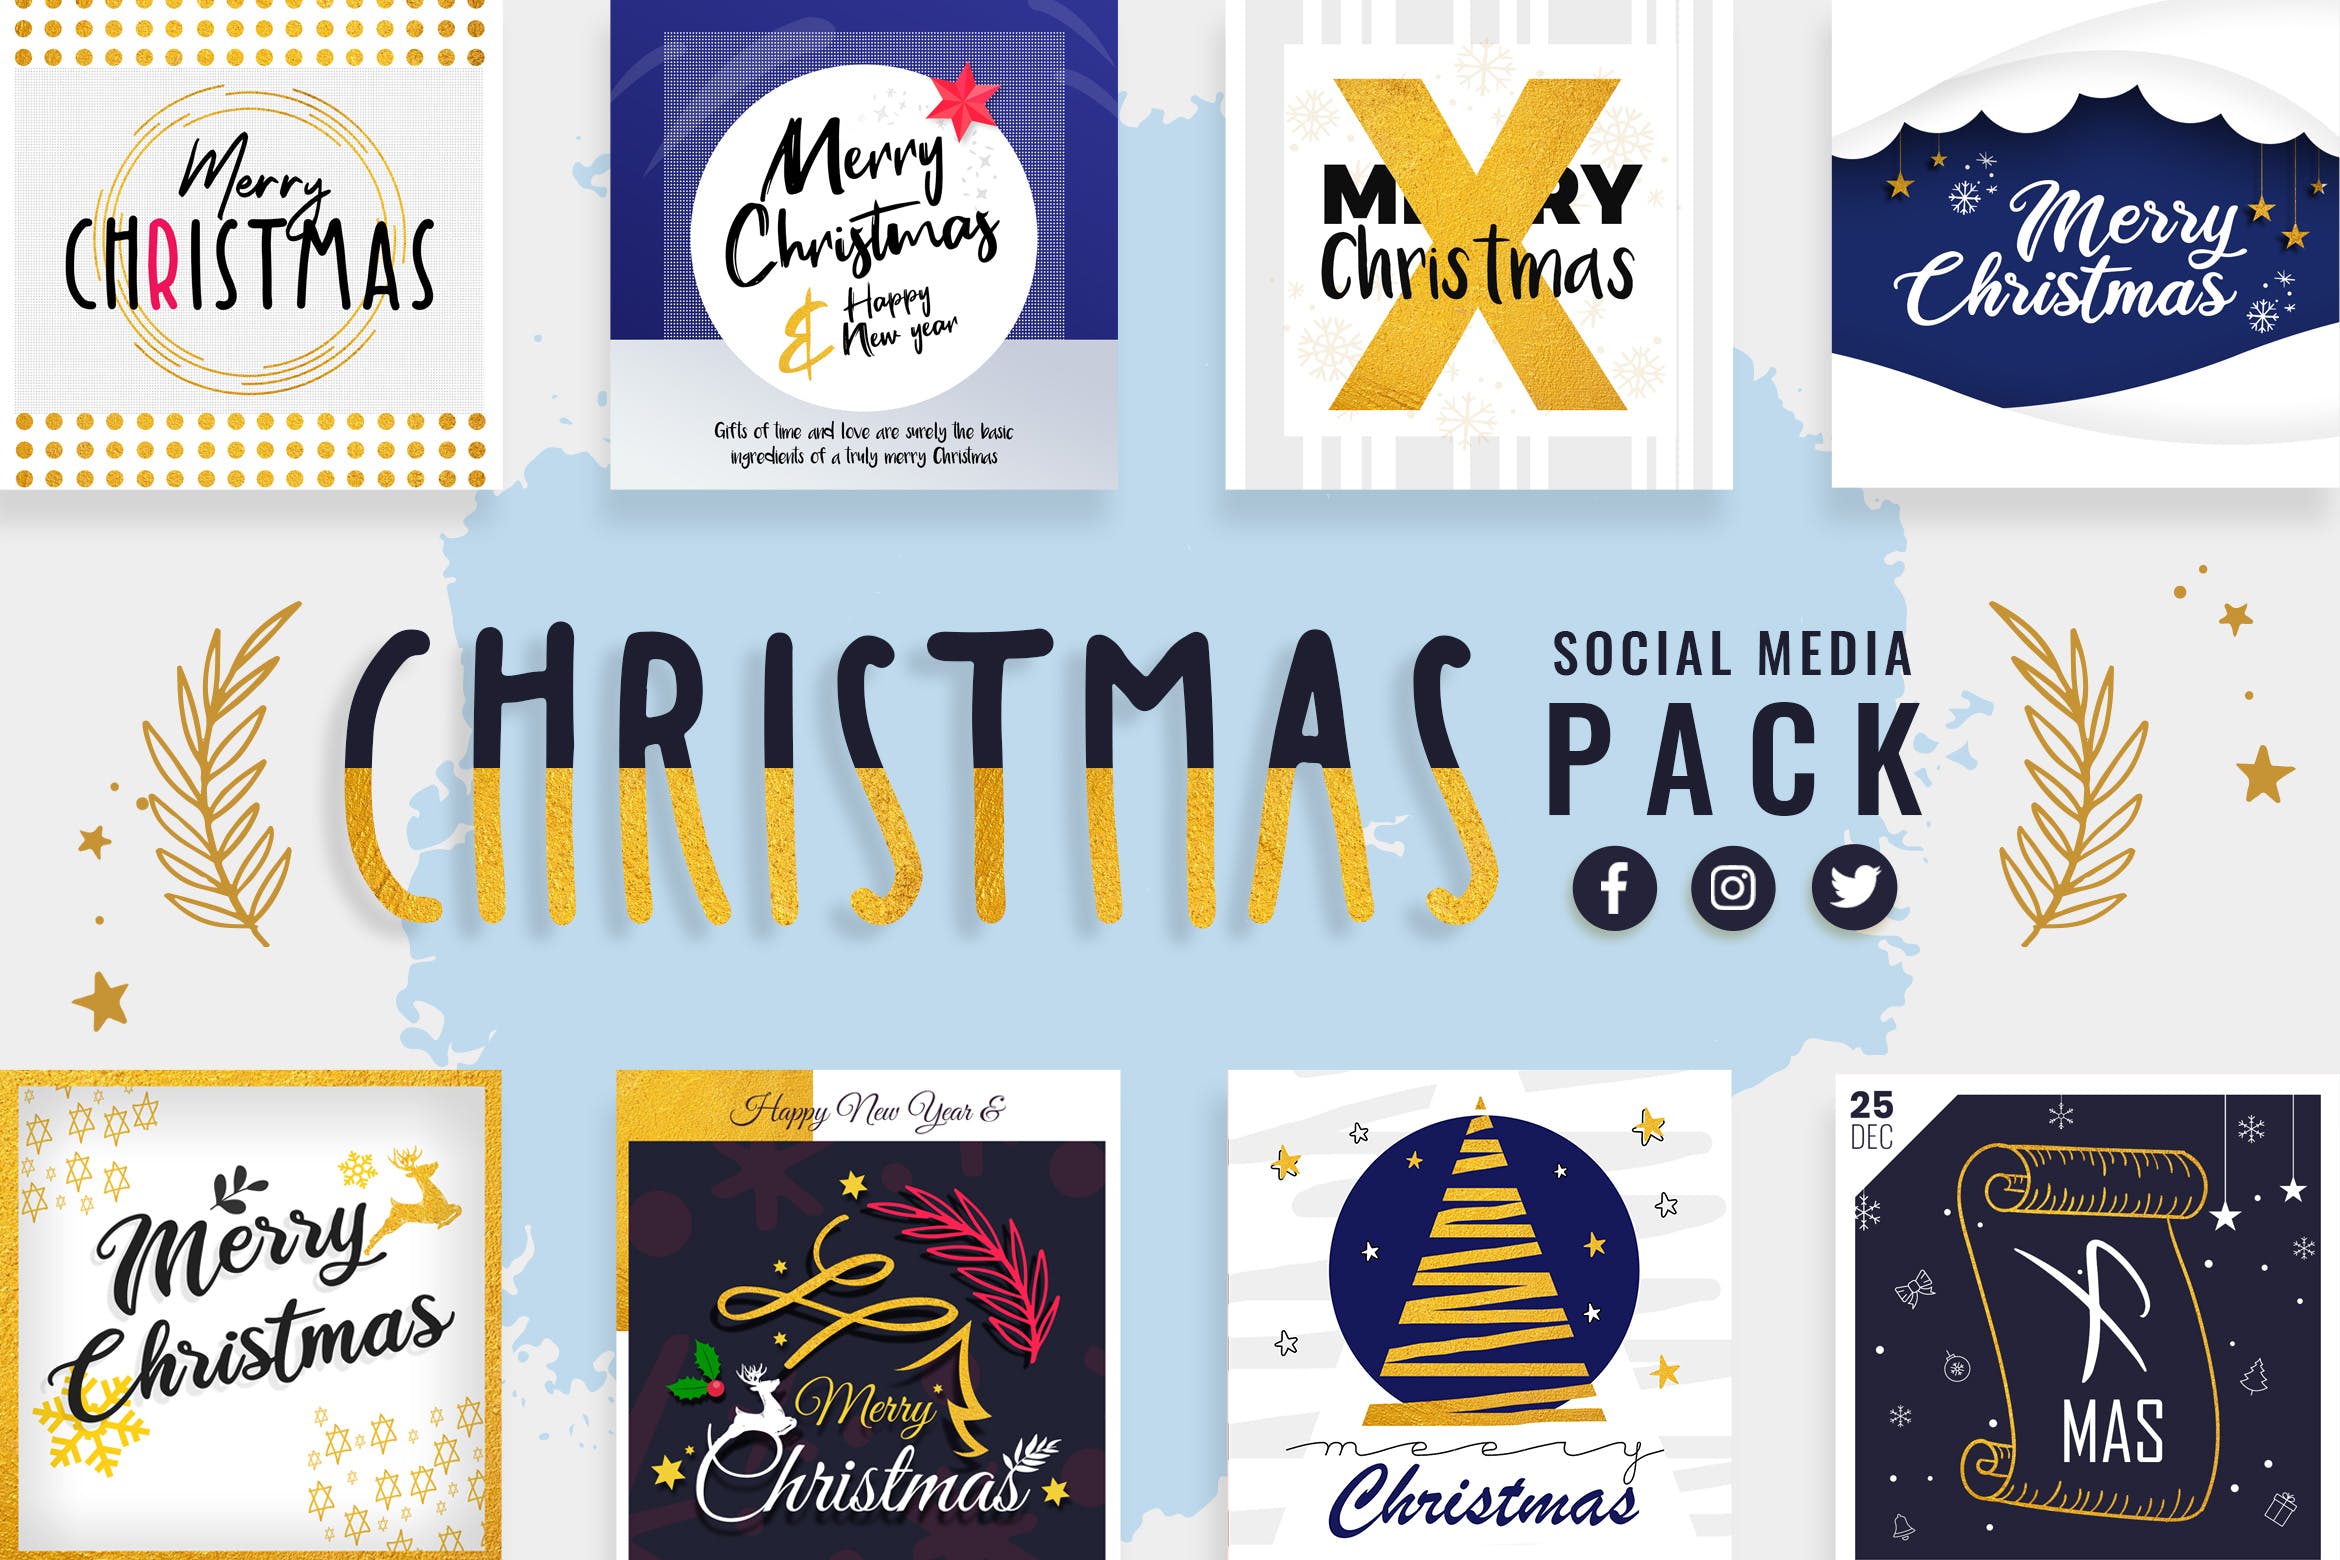 社交媒体自媒体圣诞节祝语贴图设计模板非凡图库精选 Christmas Social Media Templates插图